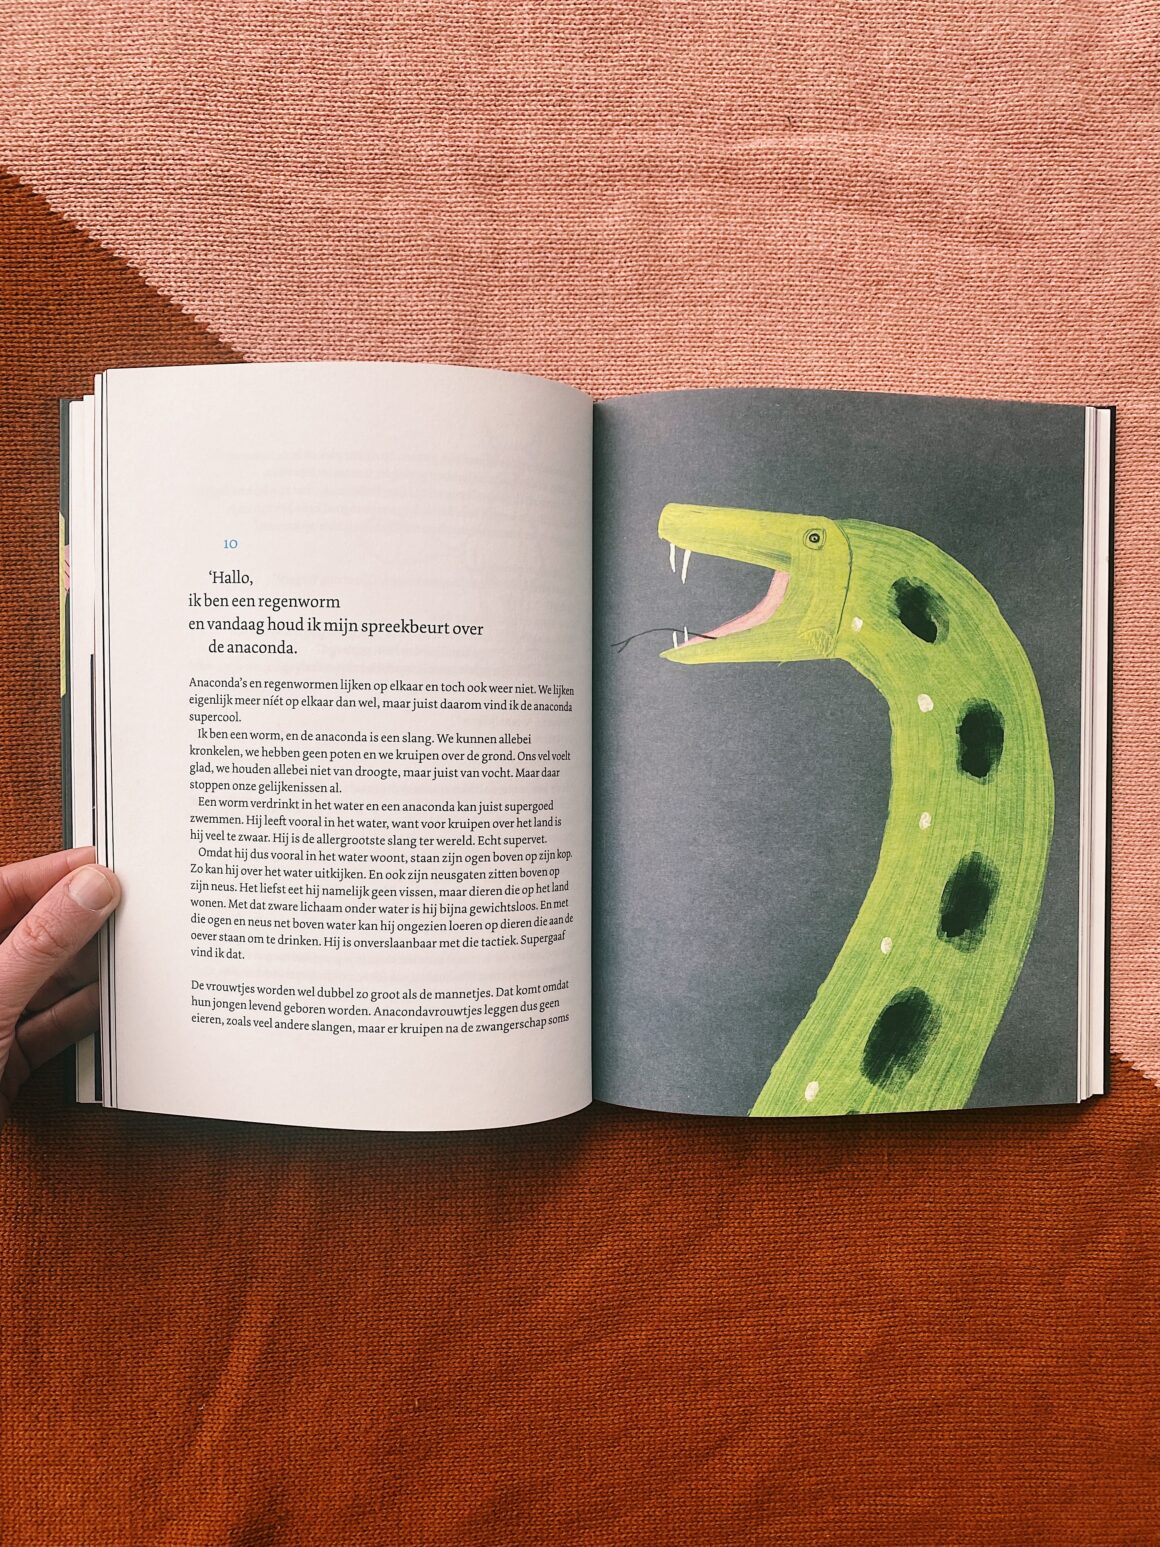 Vandaag houd ik mijn spreekbeurt over de anaconda | Weetjesboeken